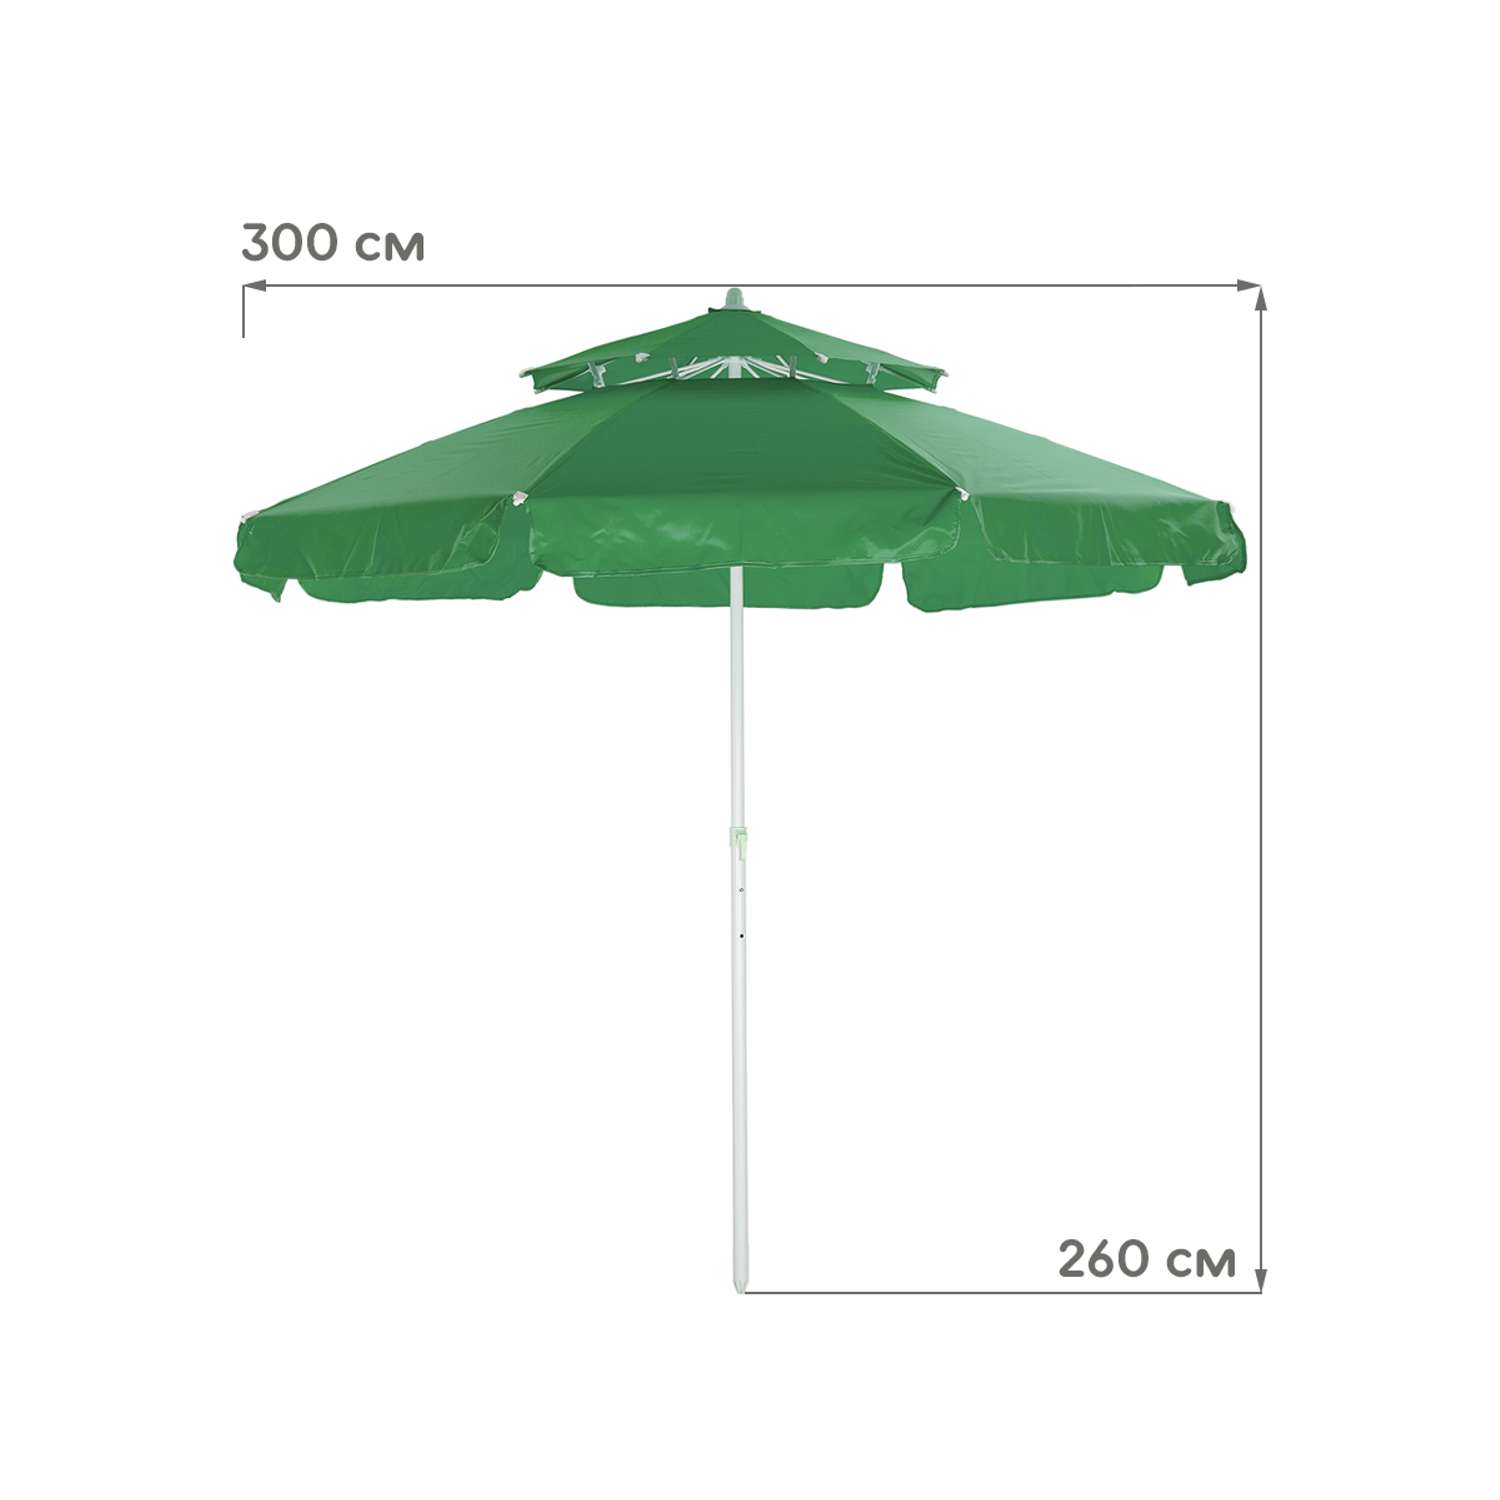 Зонт пляжный BABY STYLE большой с двойным клапаном 2.7 м зеленый - фото 2